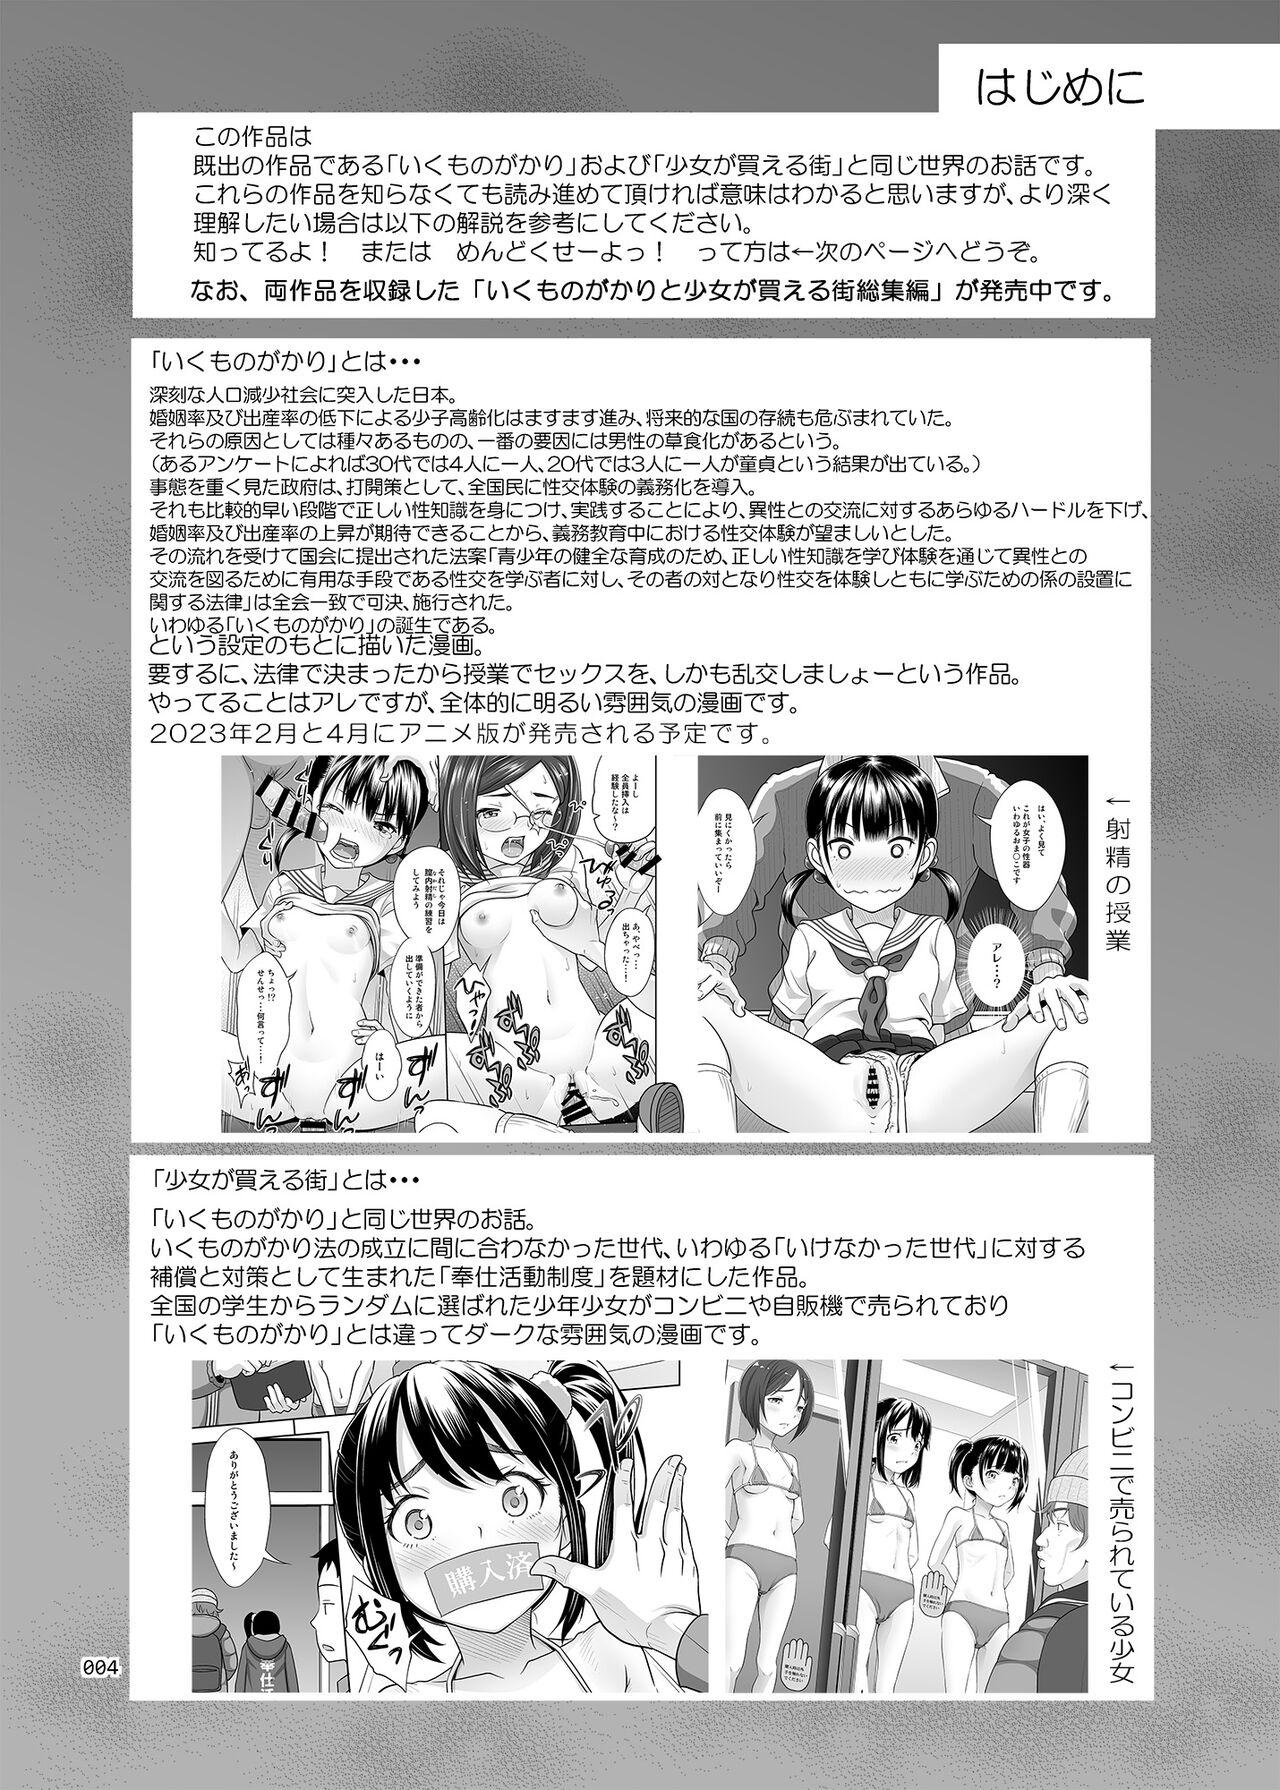 Lovers Seishidouin no Oshigoto 4 Kohen Rippana Benki ni Sodatta node Daimanzoku de Shidou wo Oeta - Original HD - Page 4